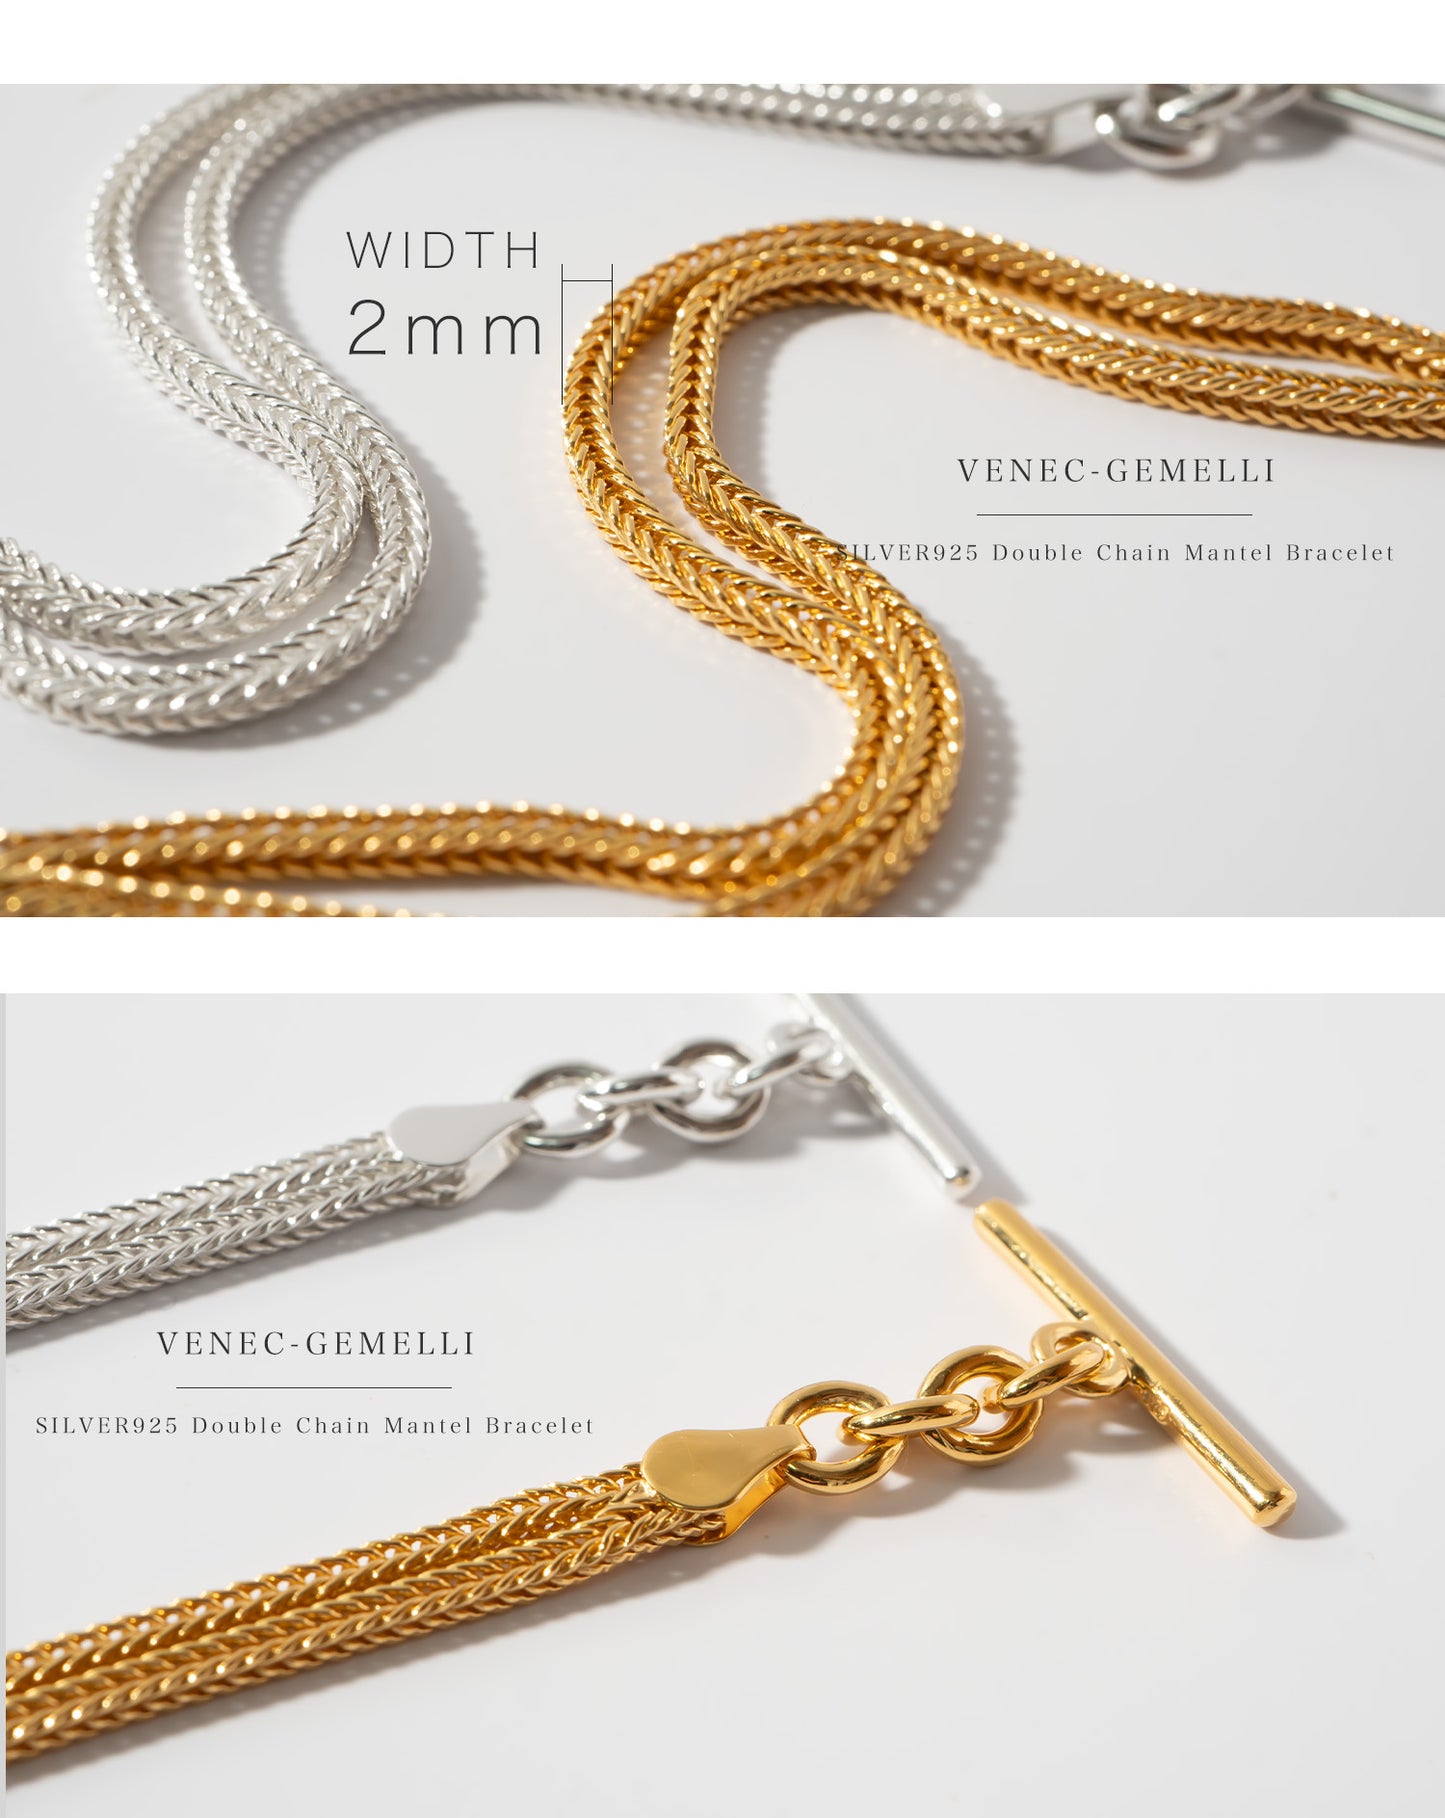 Double Chain Mantel Bracelet | VENEC-GEMELLI BRACELET